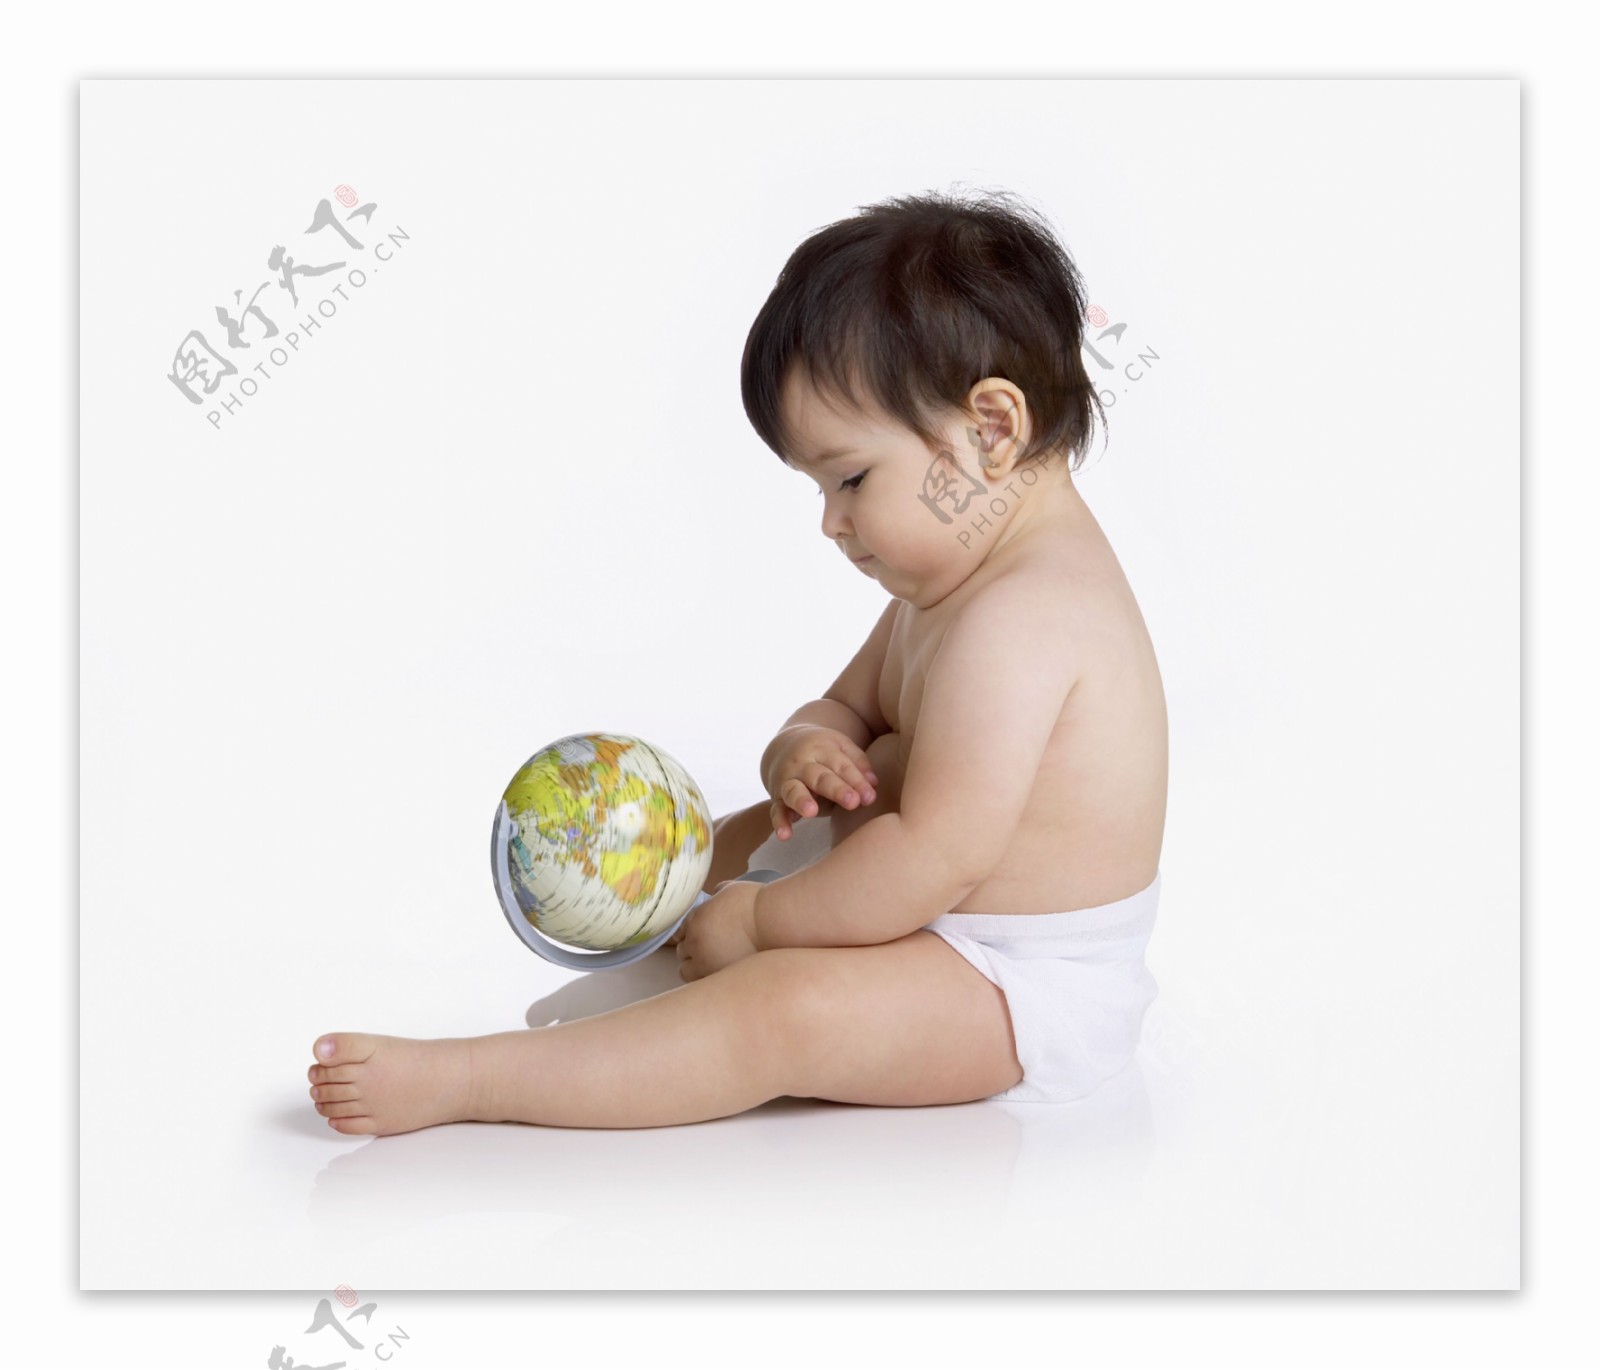 拿着地球仪玩耍的小宝宝图片